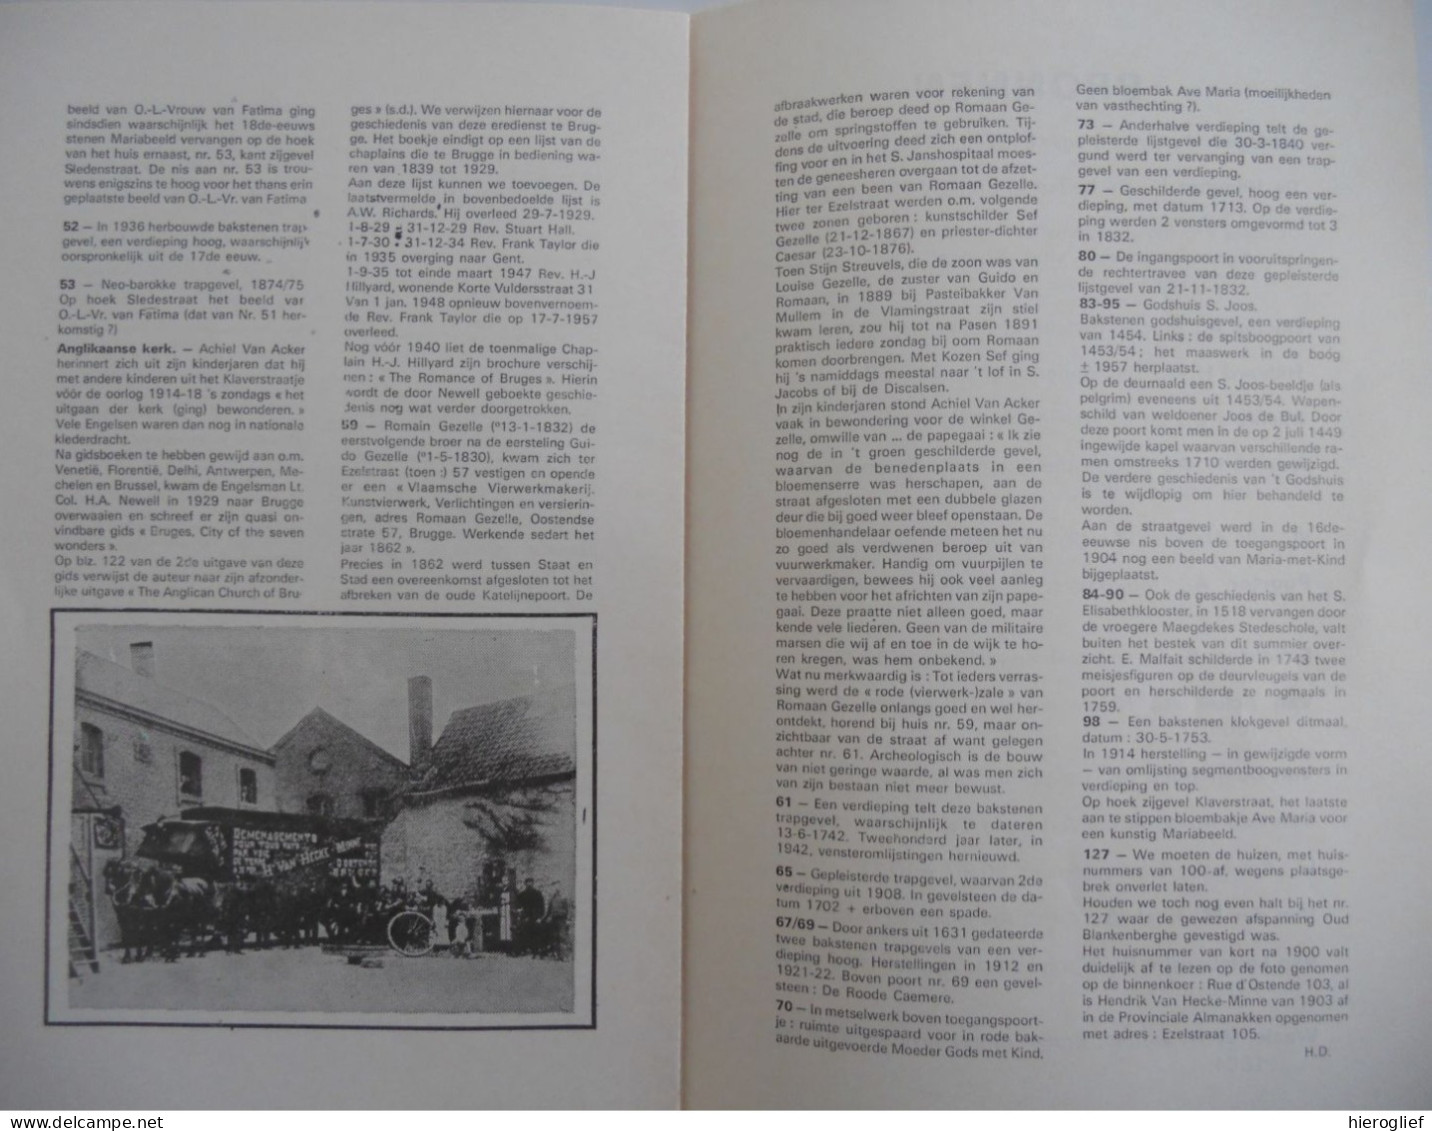 De Ezelstraat In Een Notedop - Brugge Braderie 1979 Handelsgebuurtekring - Historia